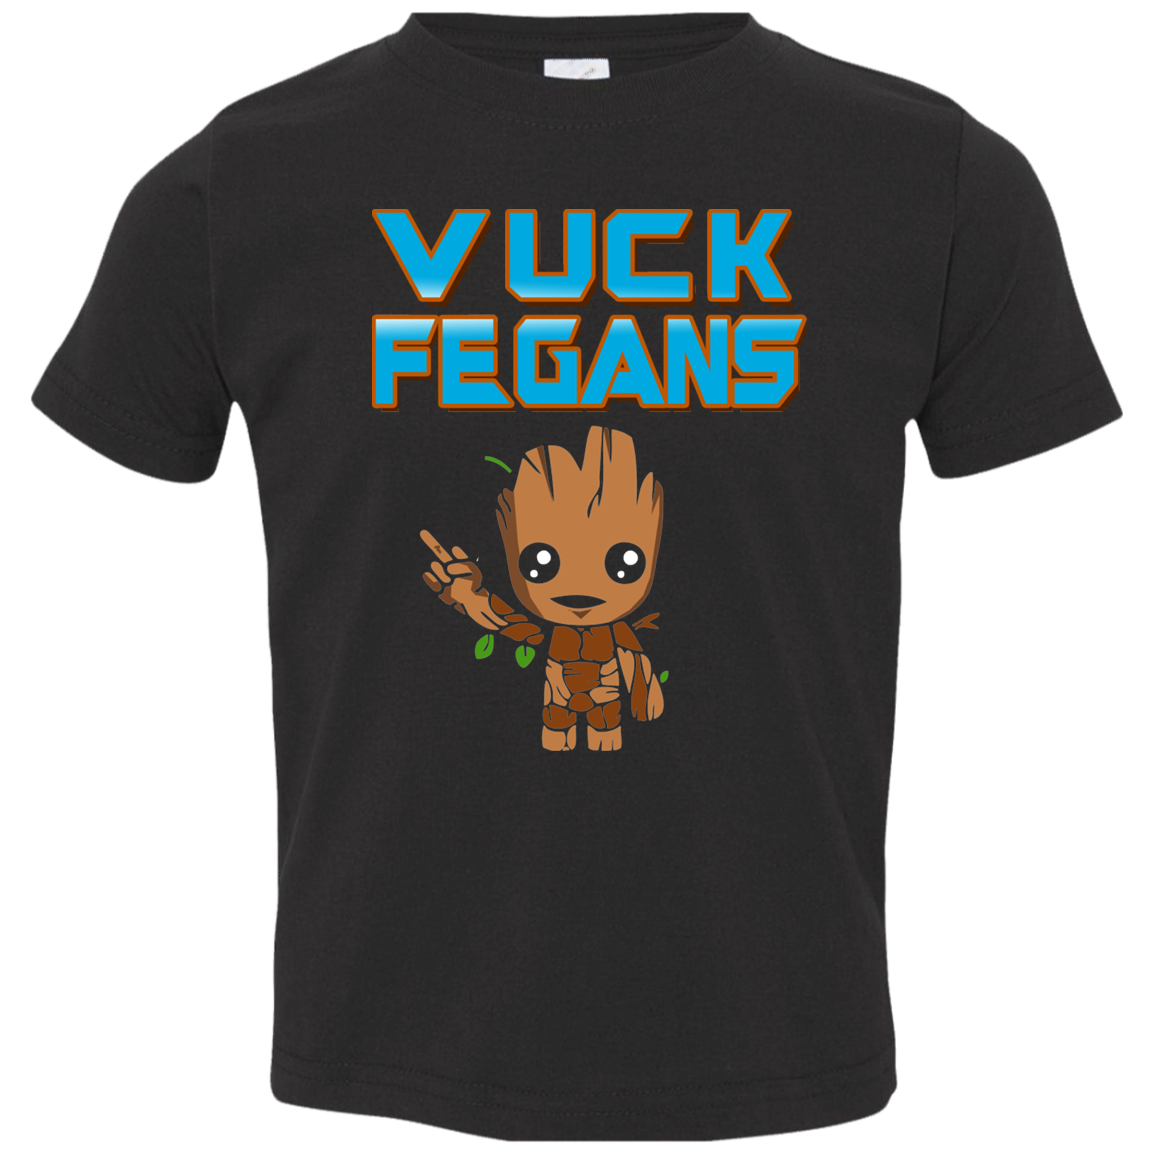 ArtichokeUSA Custom Design. Vuck Fegans. 85% Go Back Anyway. Groot Fan Art. Toddler Jersey T-Shirt